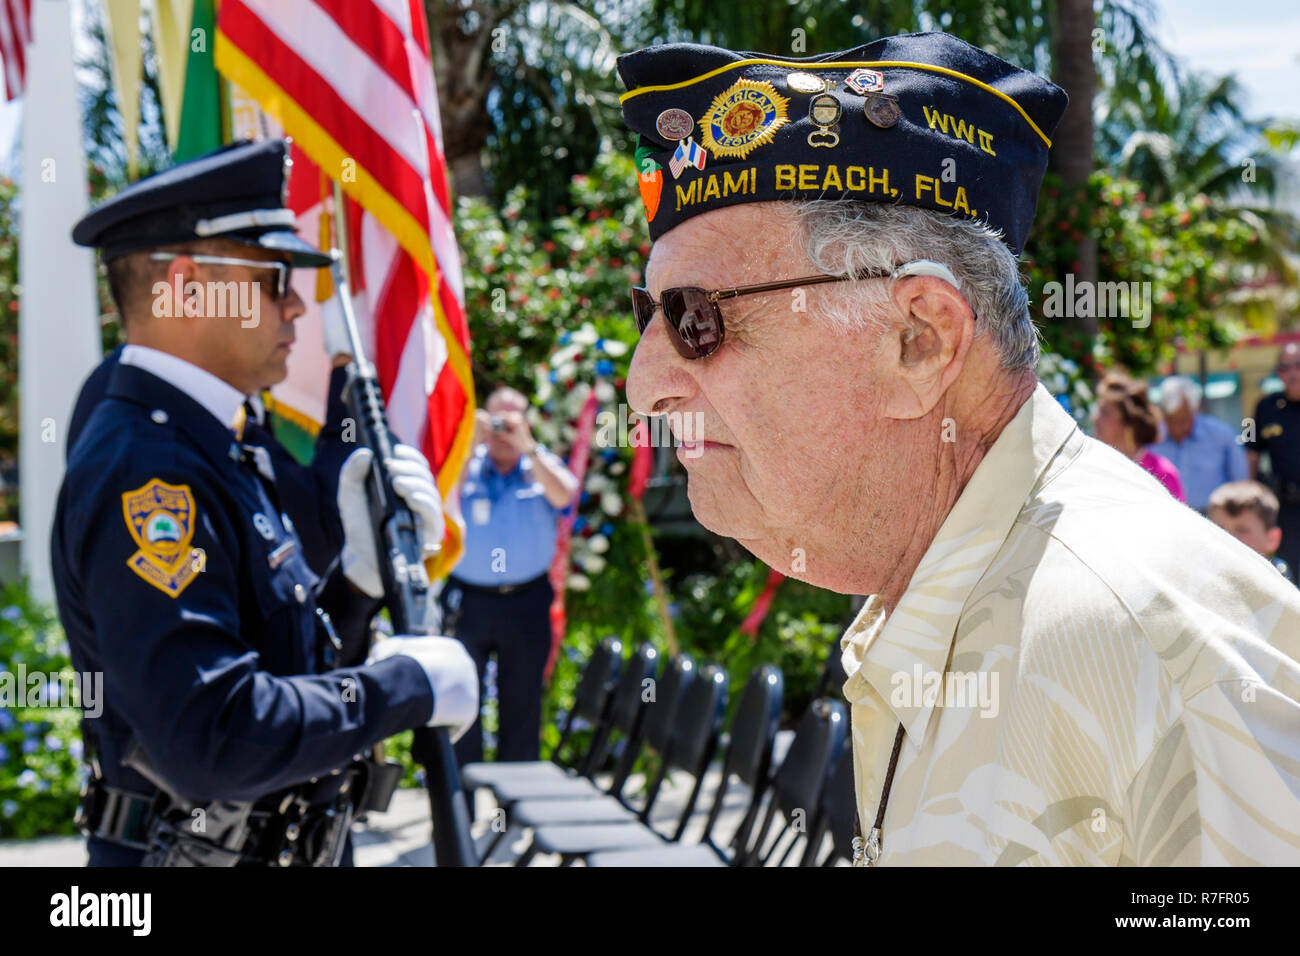 Miami Beach, Florida, Polizeiwache, Gedenkfeiertag, Bundesfeiertag, erinnern Sie sich, Ehre, Farbwache, Veteran, 2. Weltkrieg, Mann Männer Erwachsene Erwachsene, ältere Menschen, adu Stockfoto